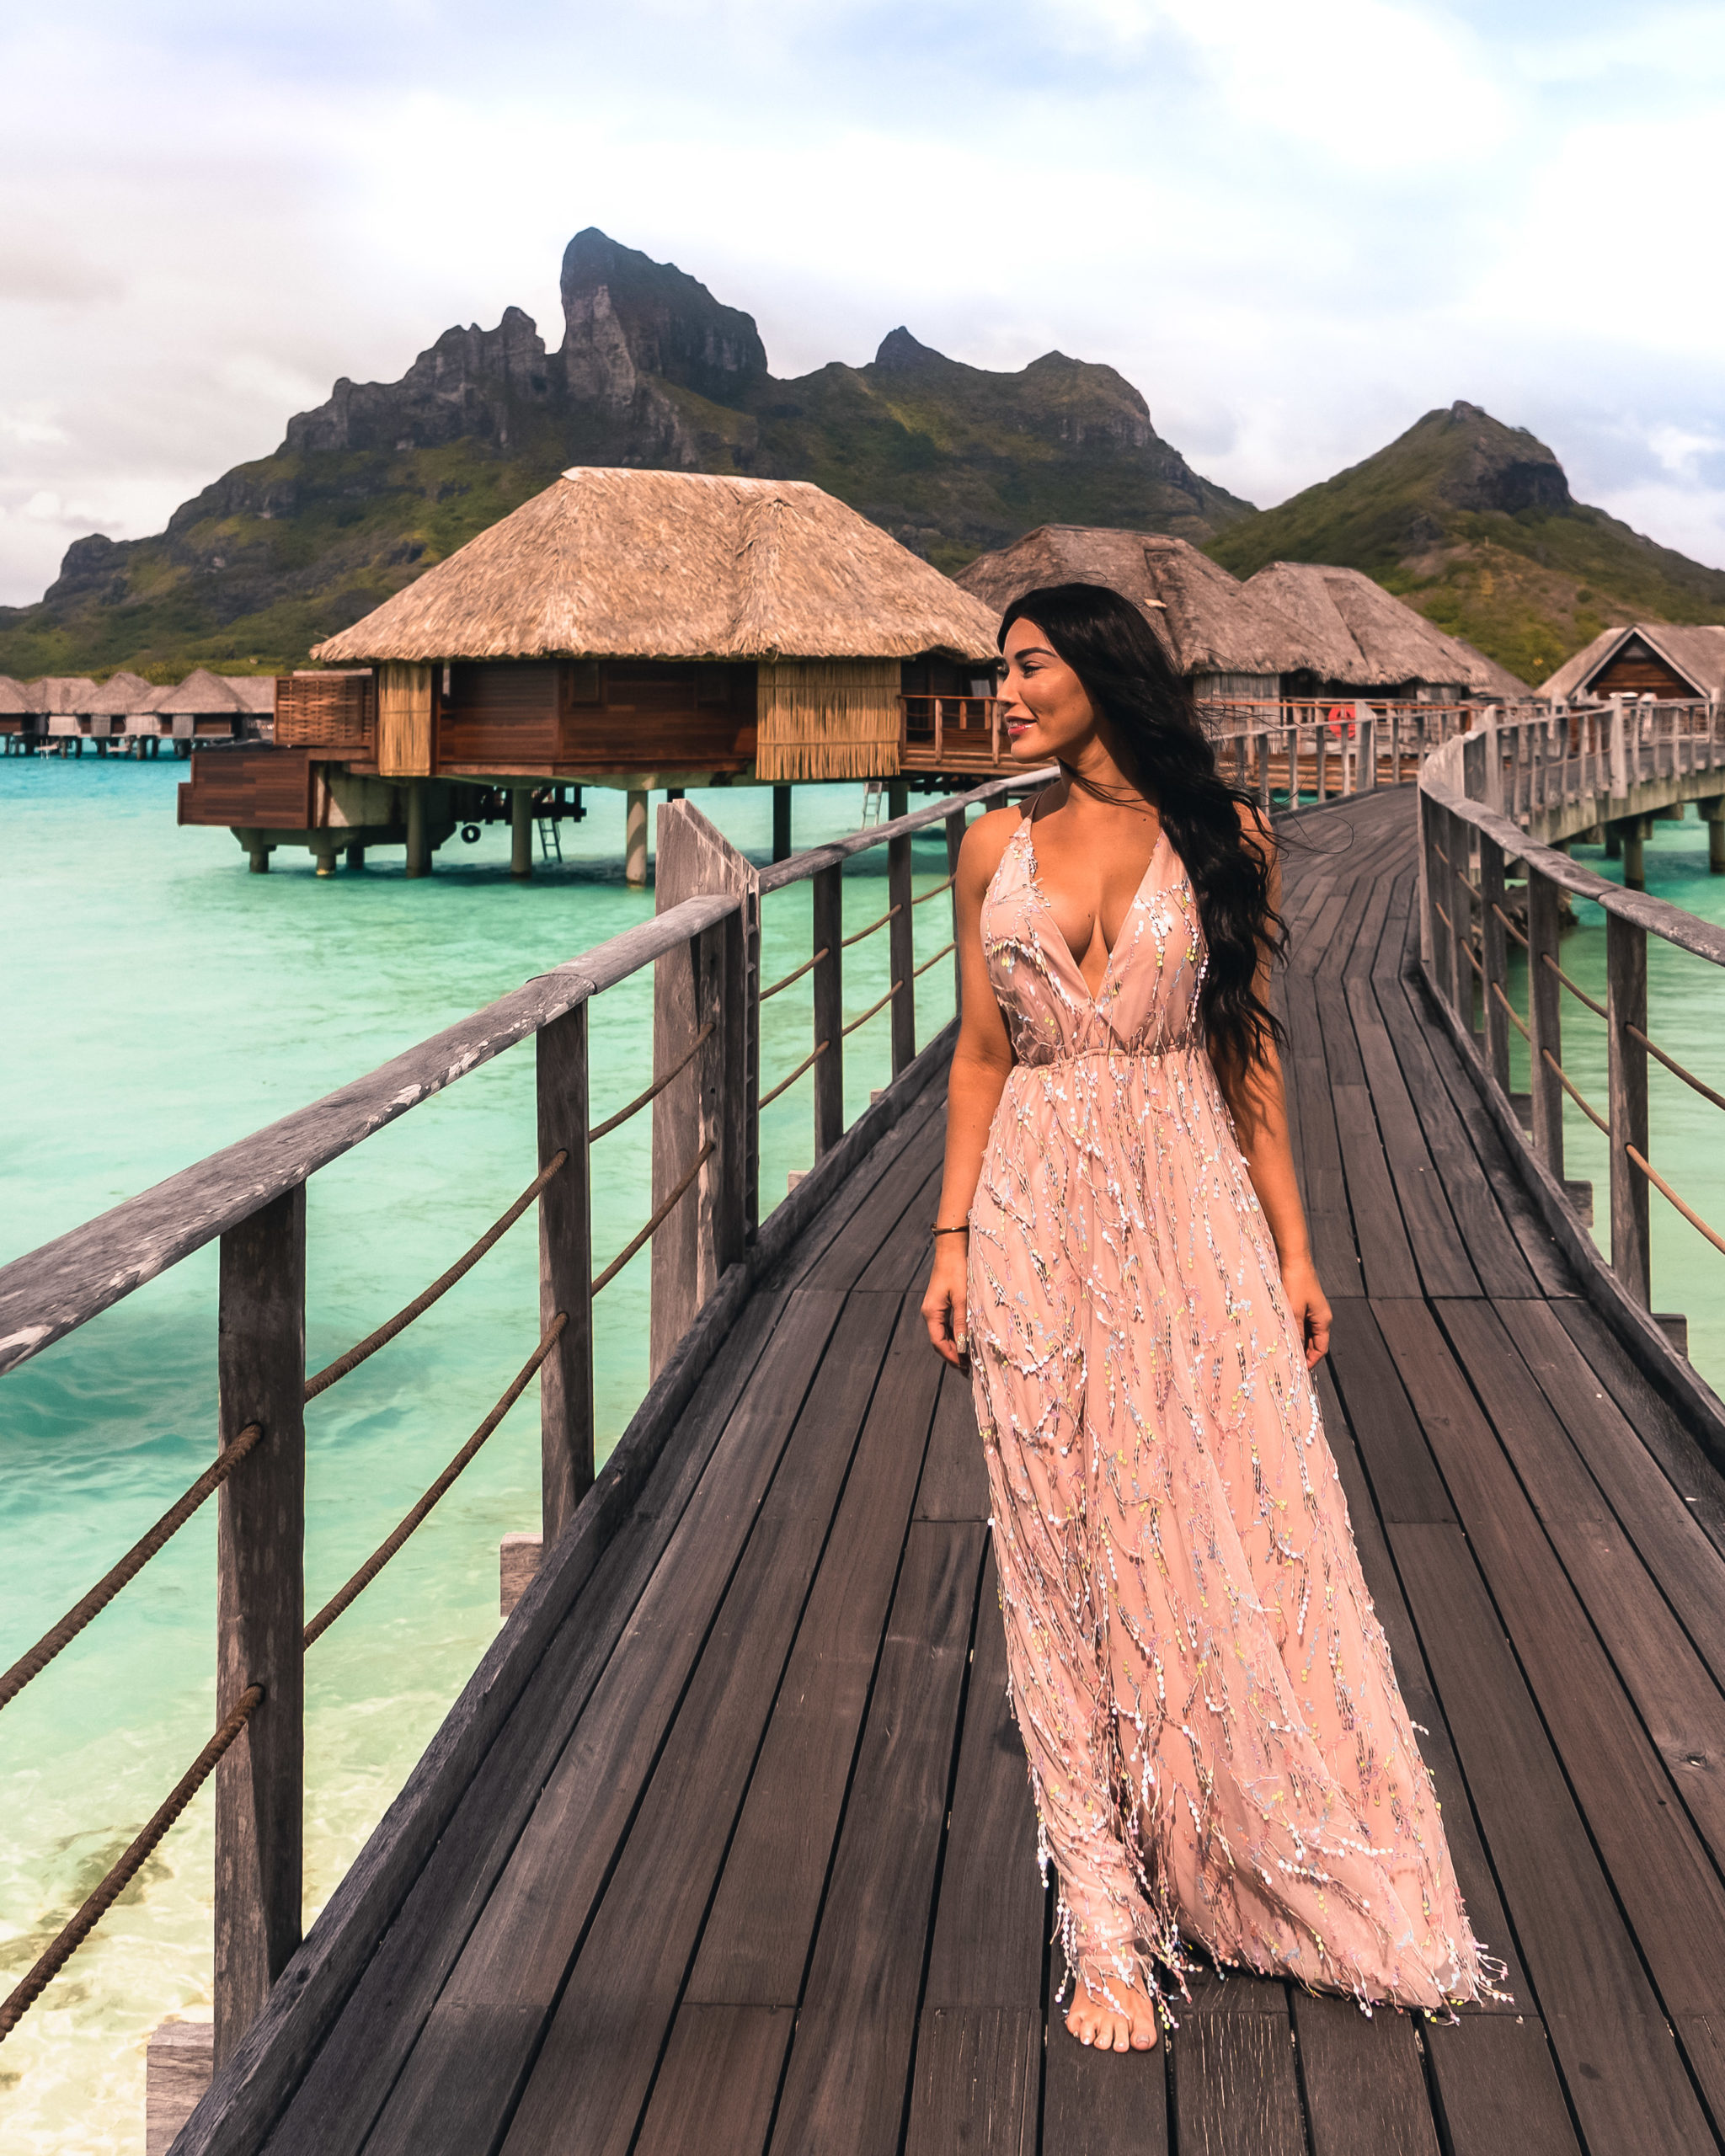 A Review of the Four Seasons Resort Bora Bora